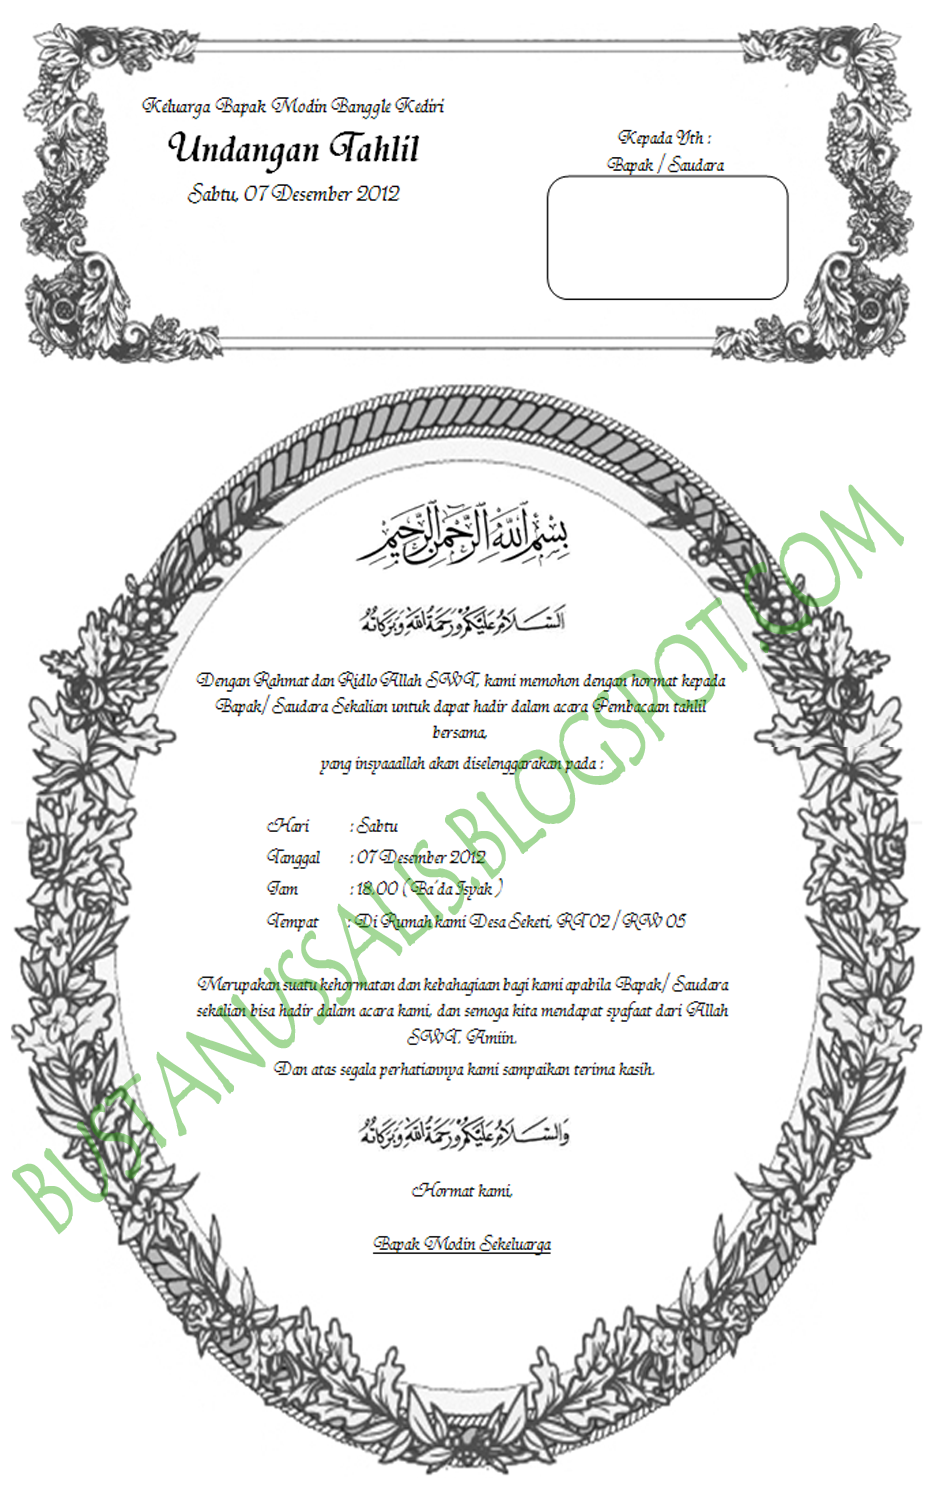 Undangan Walimatul Ursy, tahlil dan Aqiqah dengan format 